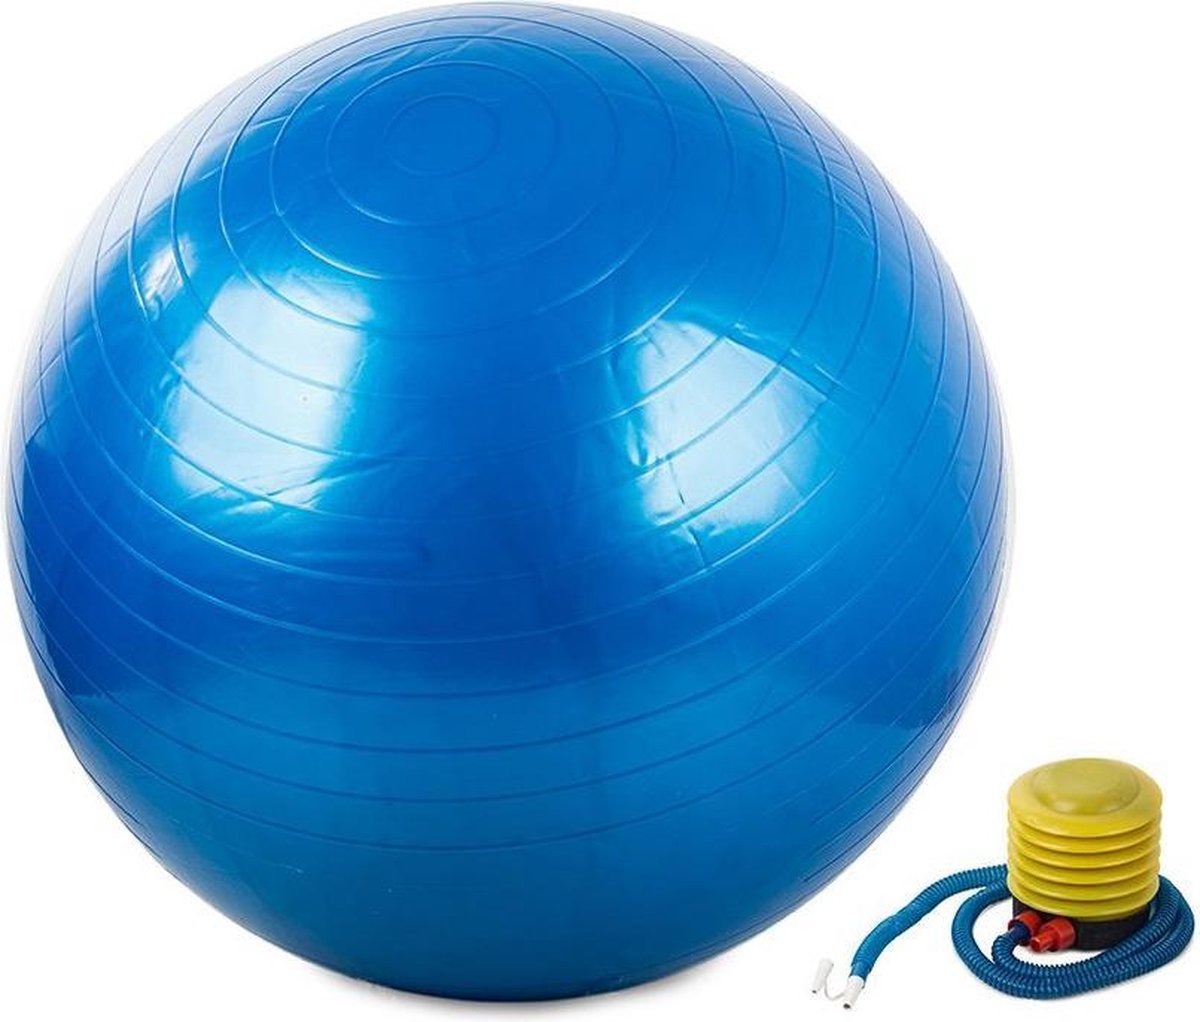 Gymnastiekbal (blauw) - Gymbal - Yoga Bal - Fitness Bal - Pilates - Fitness - 60cm inclusief Pomp! Versterking spieren/conditie/Mobiliteit!